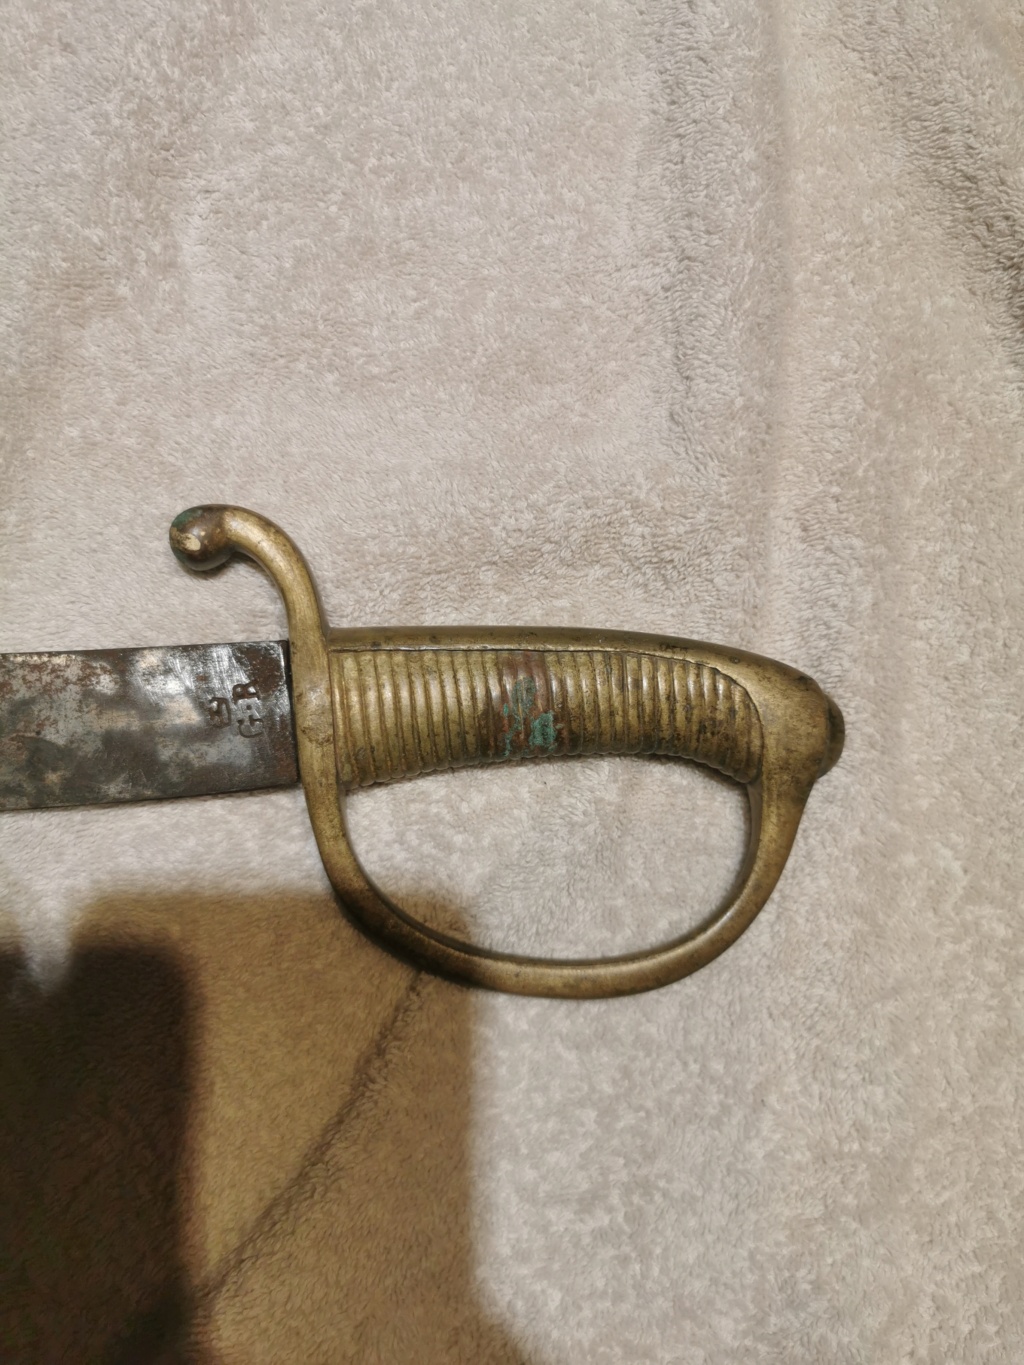 Aide identification précise sabre briquet vieille garde impériale 16093411